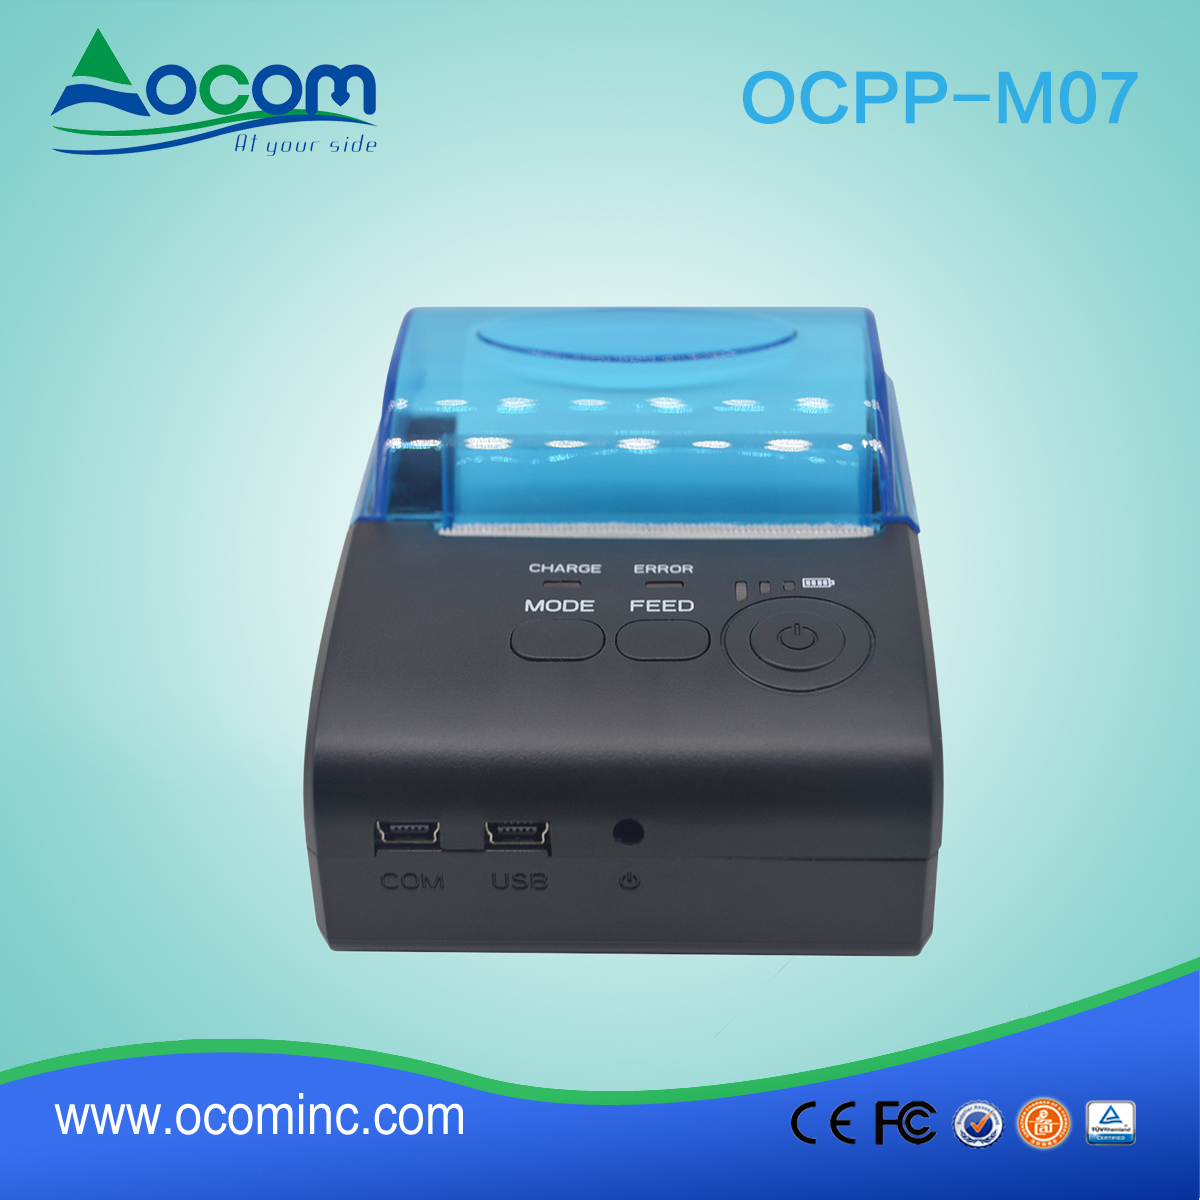 OCPP M07 连接智能手机的无线usb蓝牙移动热敏打印机